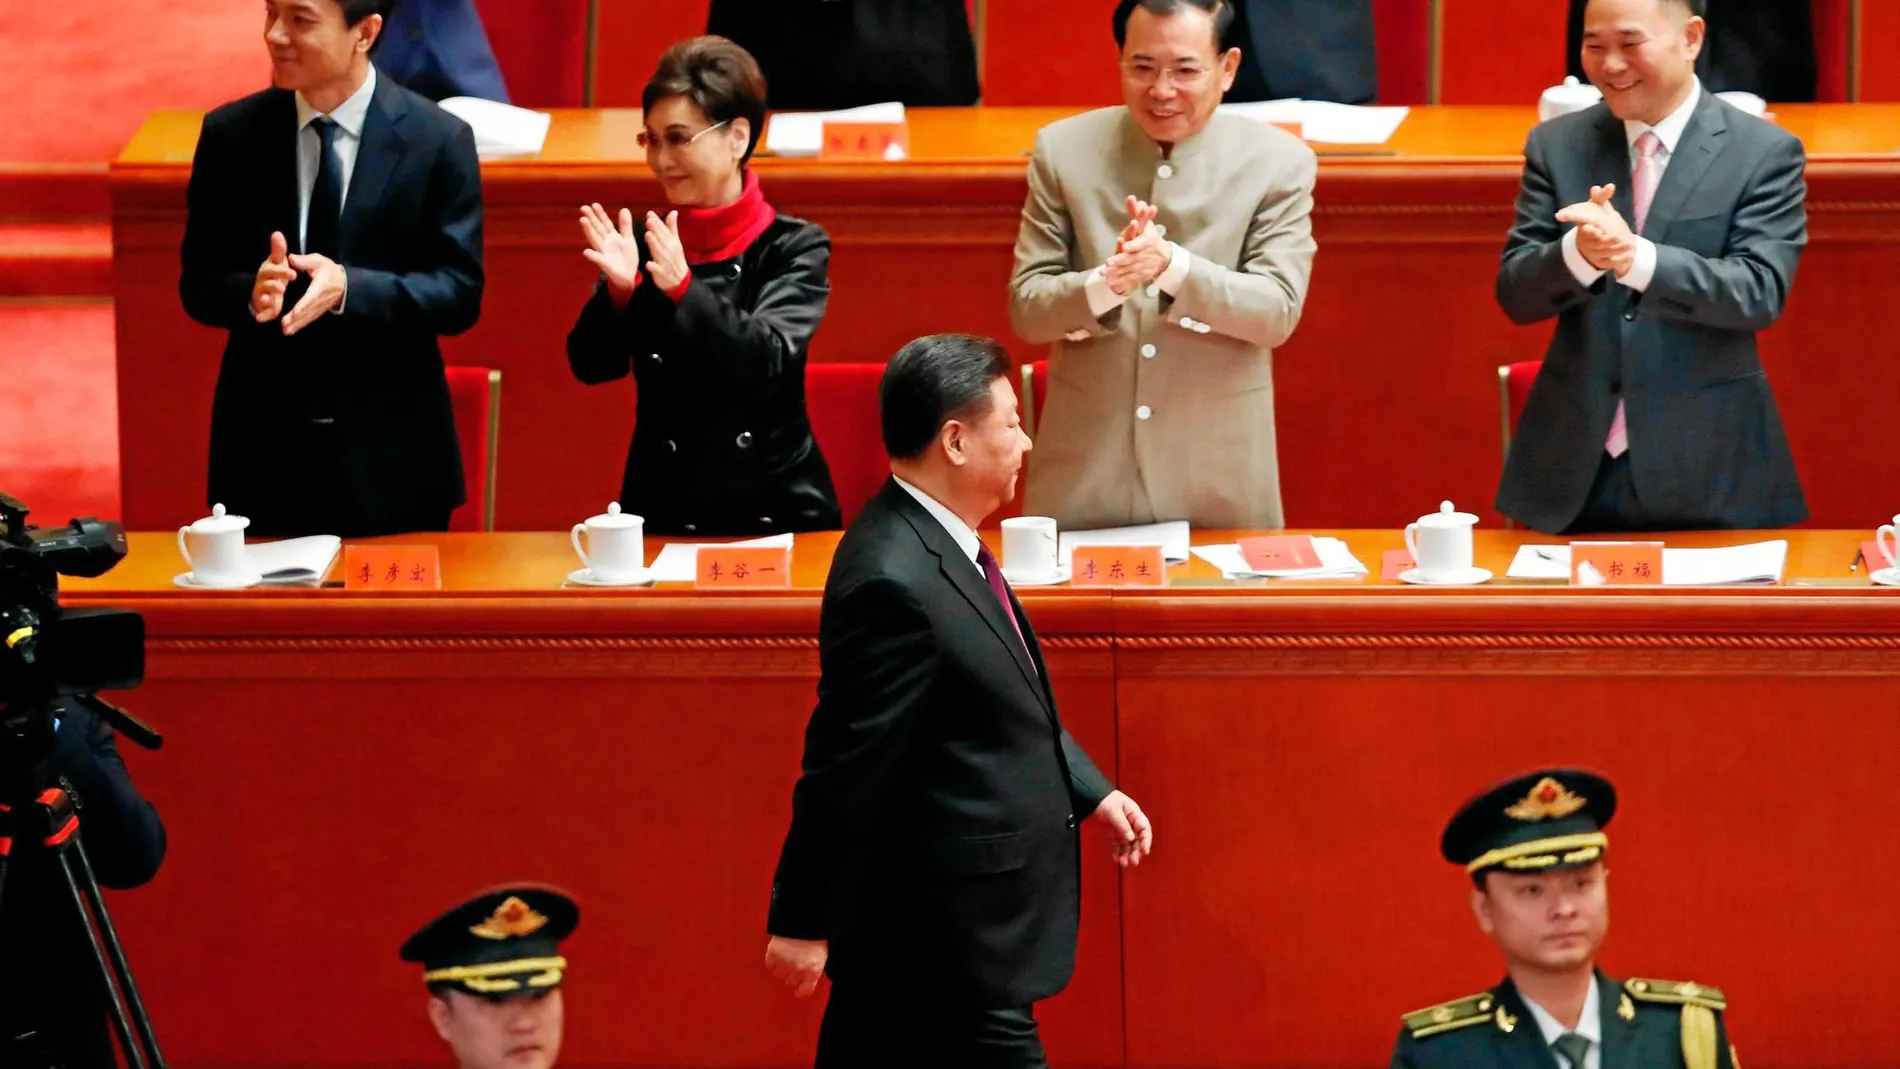 Ovación de 3.000 delegados. El presidente Xi Jinping llega al acto del 40º aniversario de las reformas para dar su discurso en el Gran Palacio del Pueblo